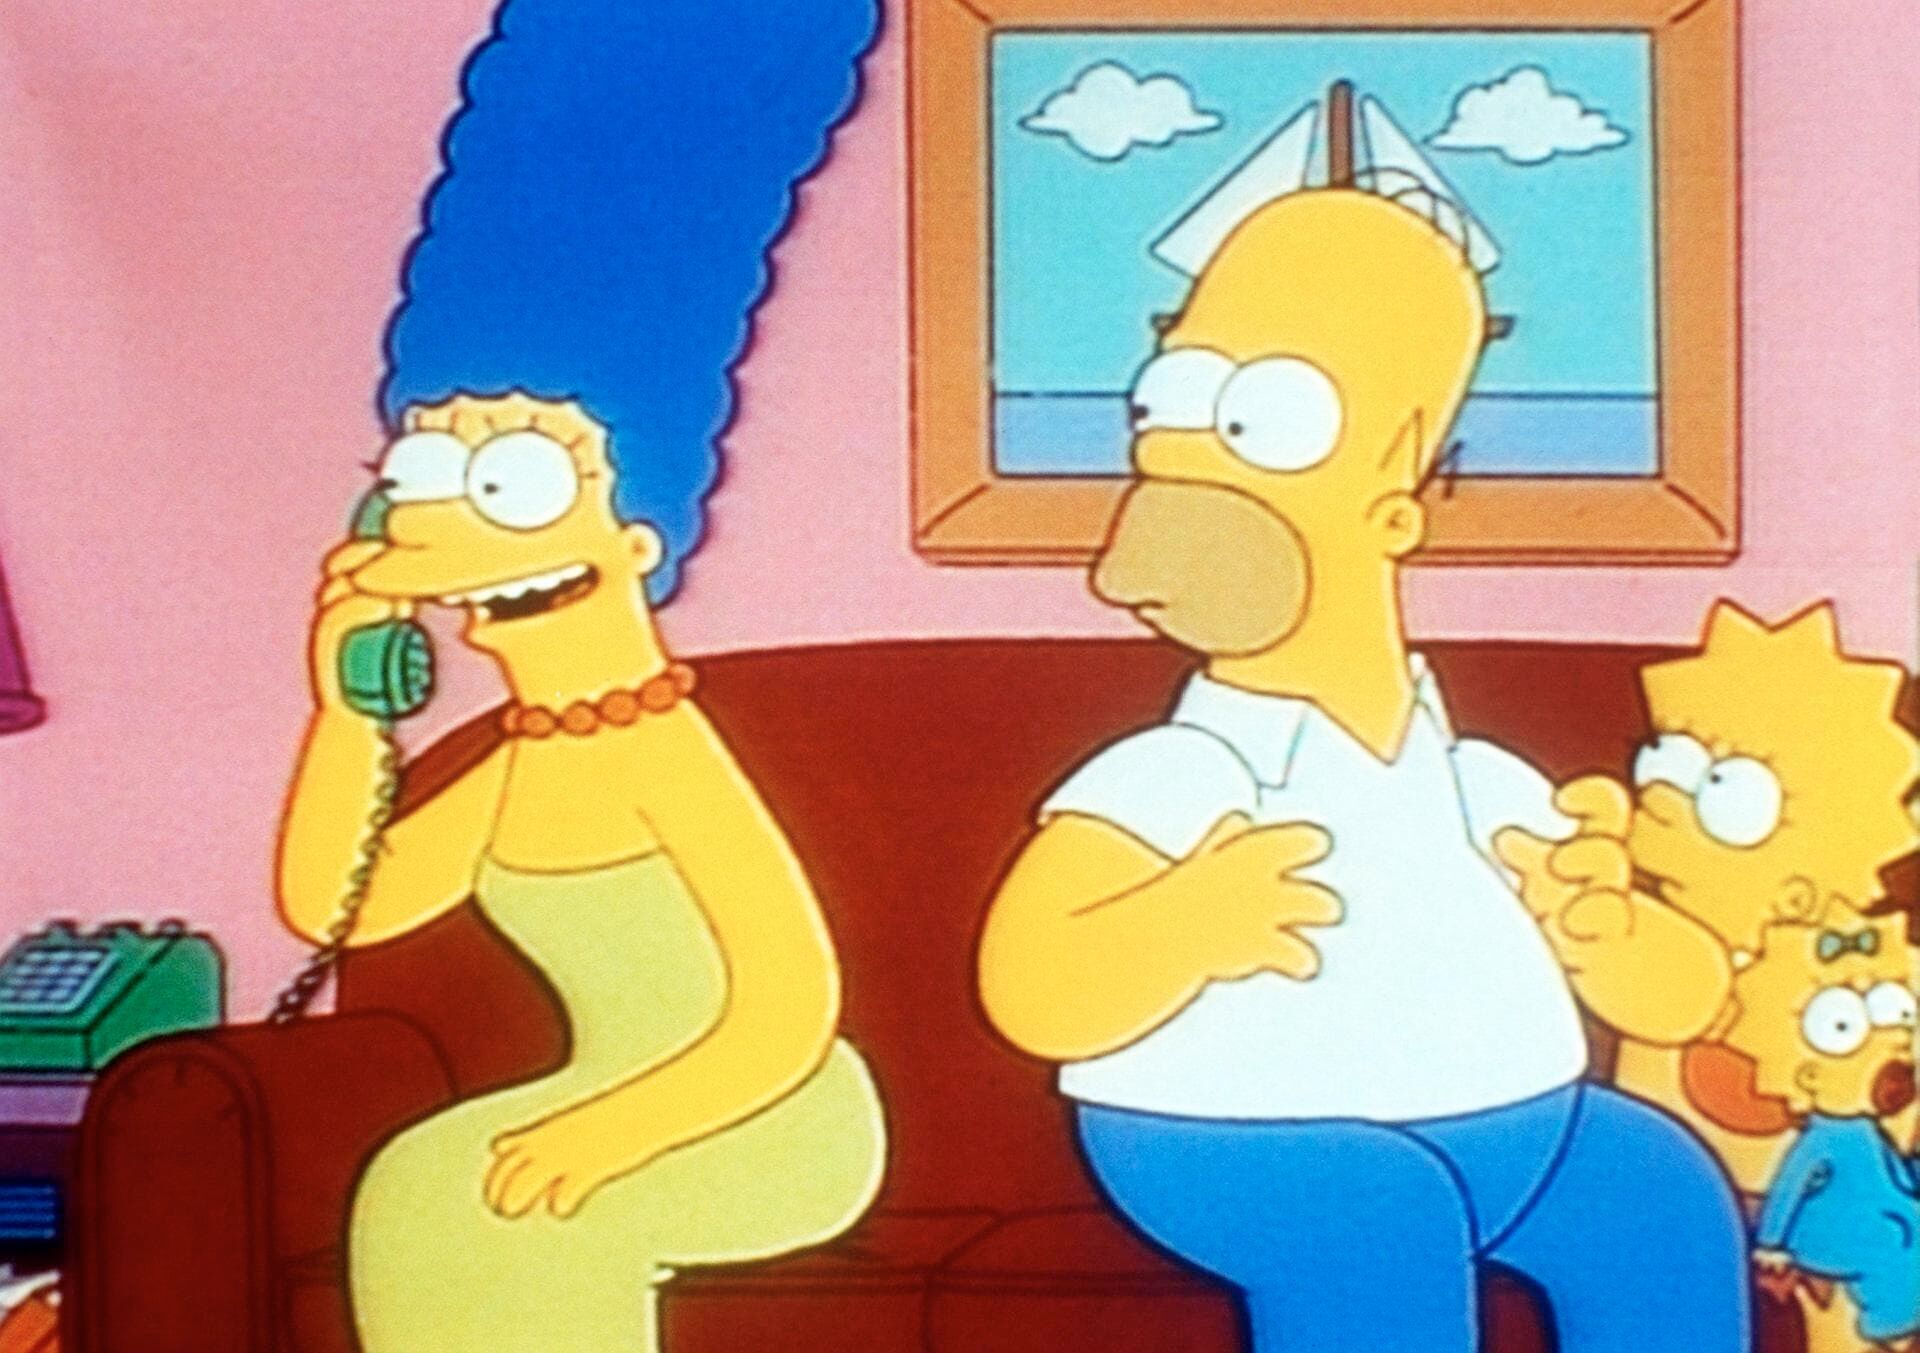 Les Simpson - Saison 5